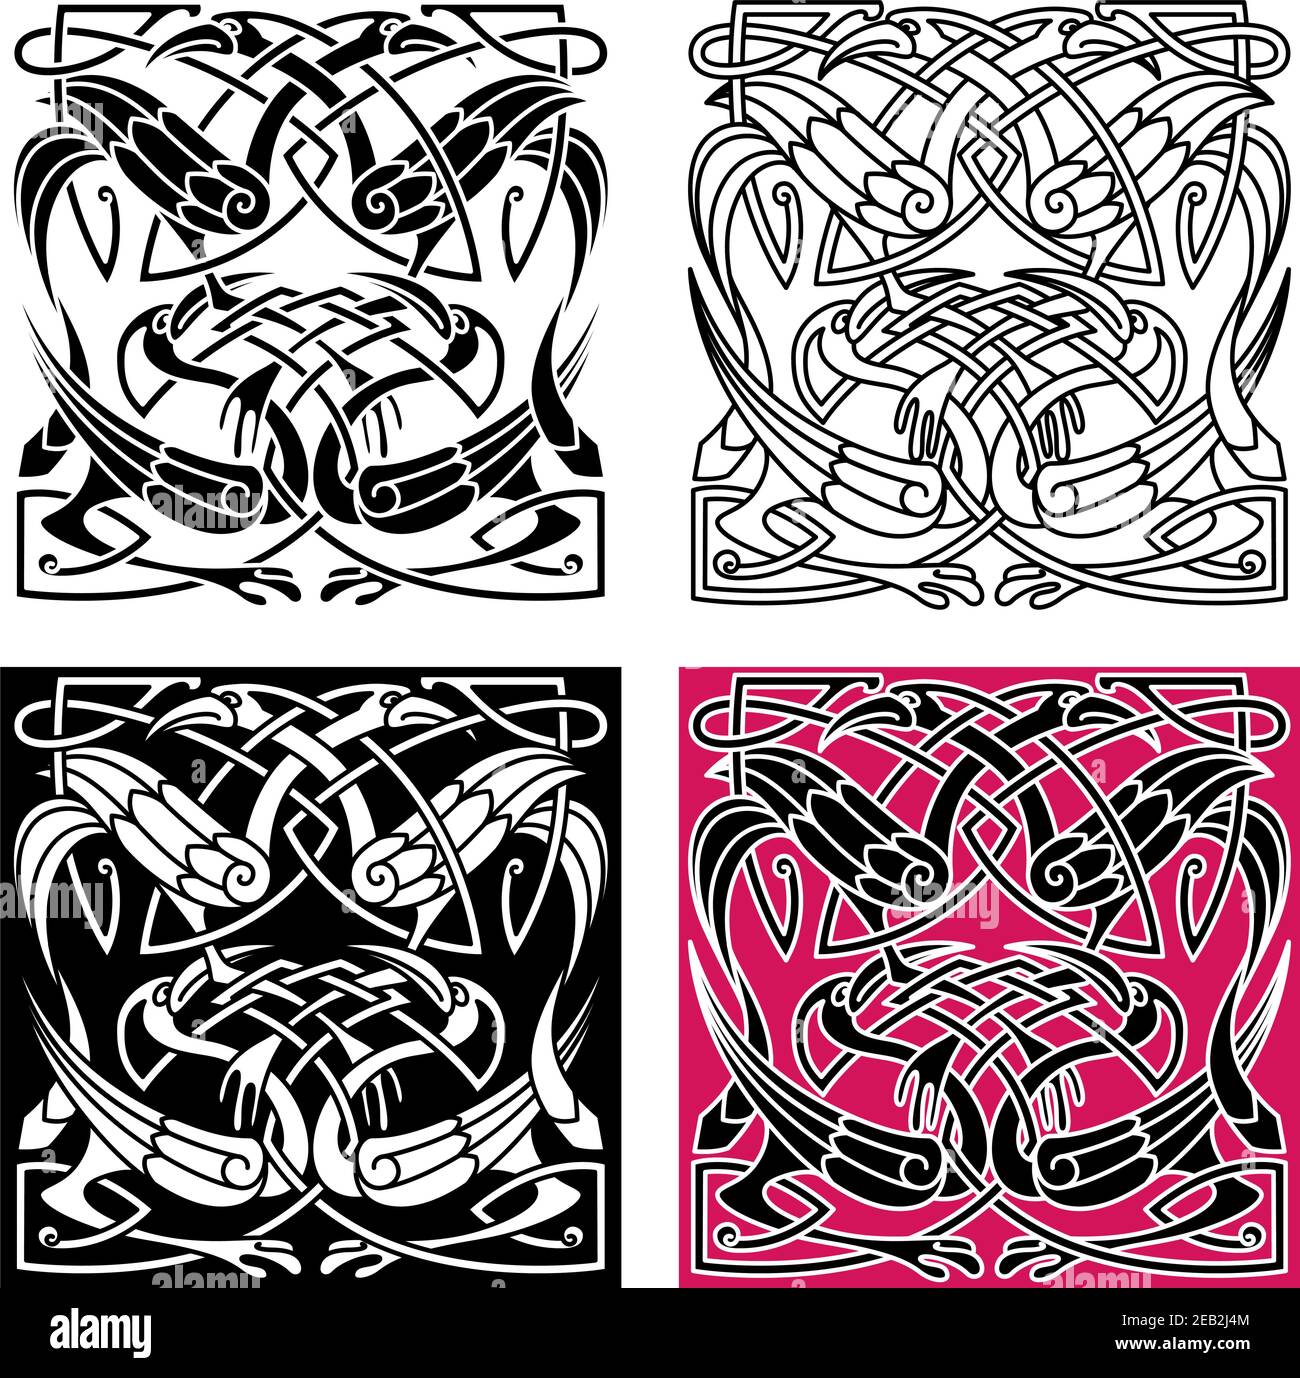 Keltisches Knotenmuster mit wunderschönen Reihern mit Wappen, Flügeln und Beinen. Für Tattoo oder Kunstdesign Stock Vektor